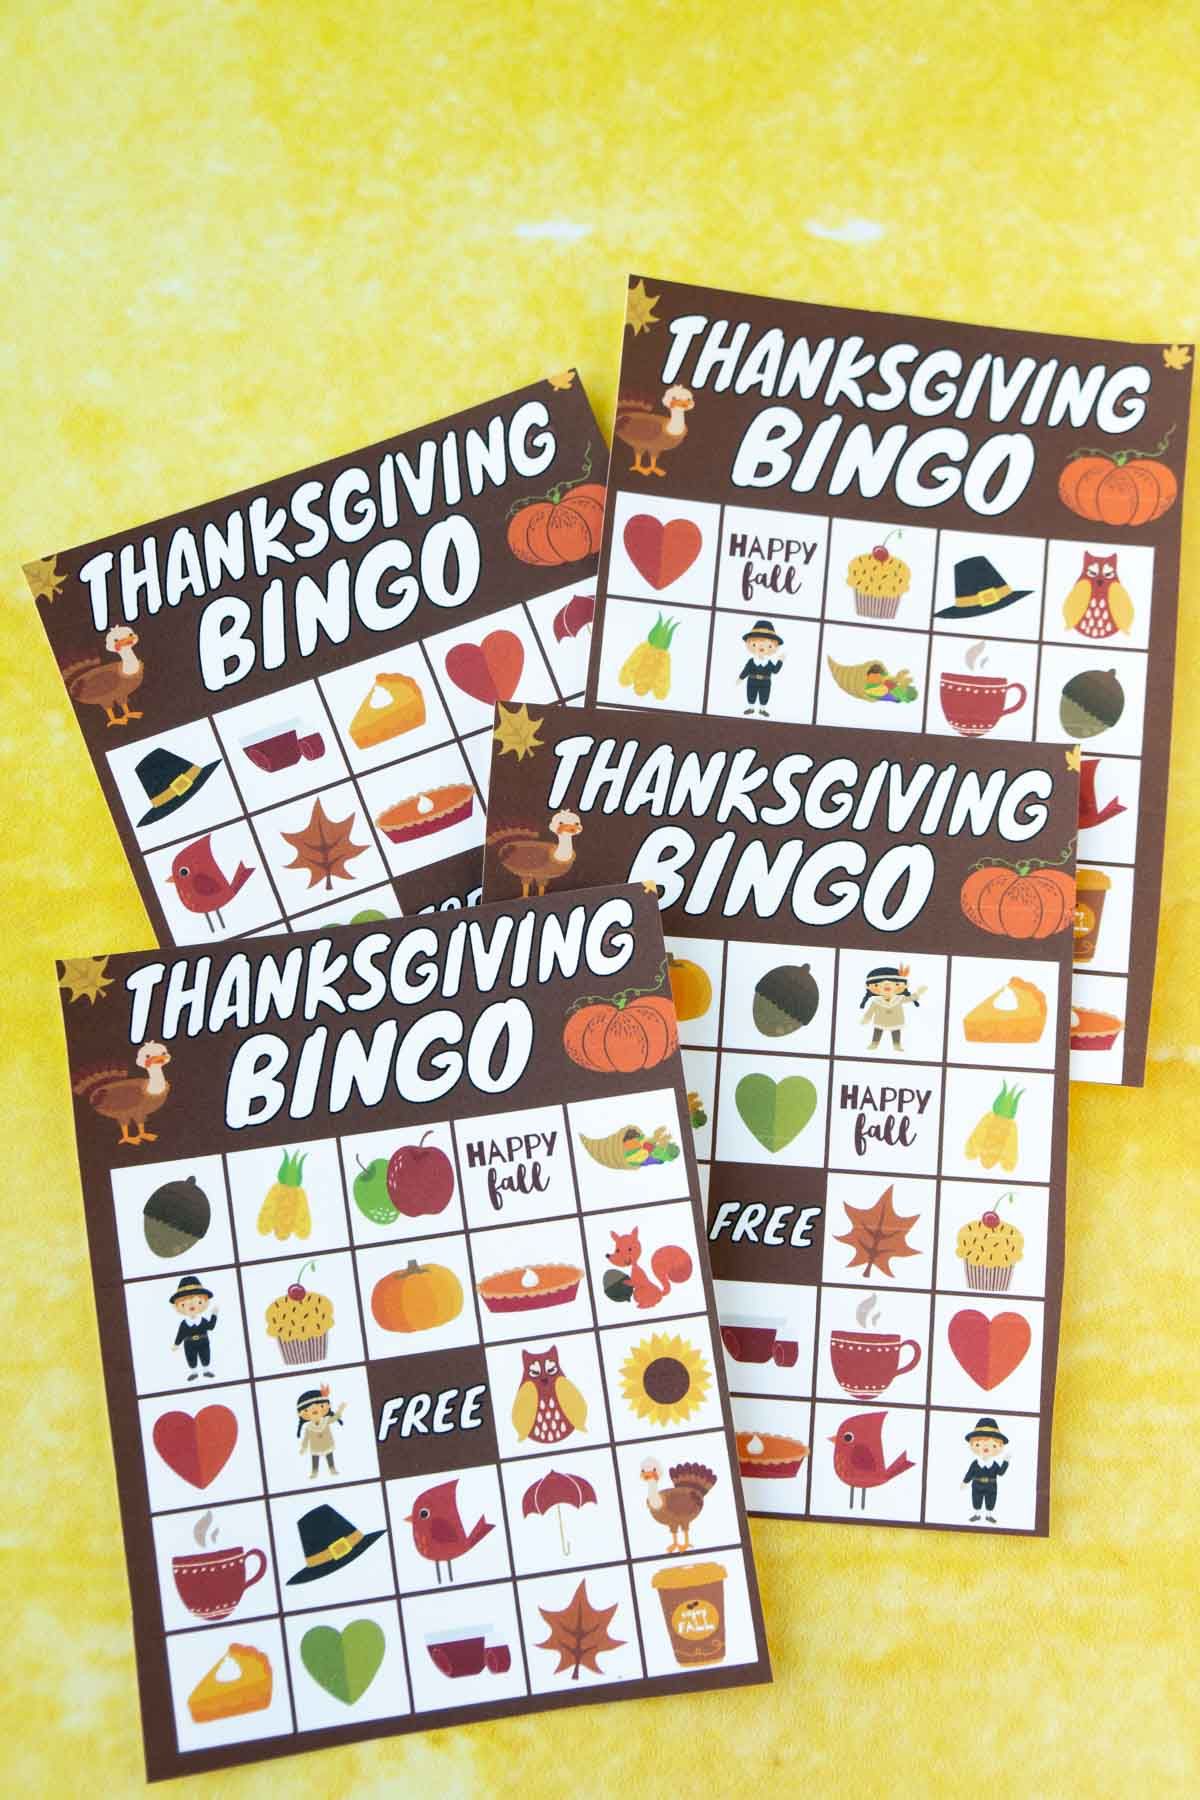 Neli tänupüha bingokaarti kollasel taustal